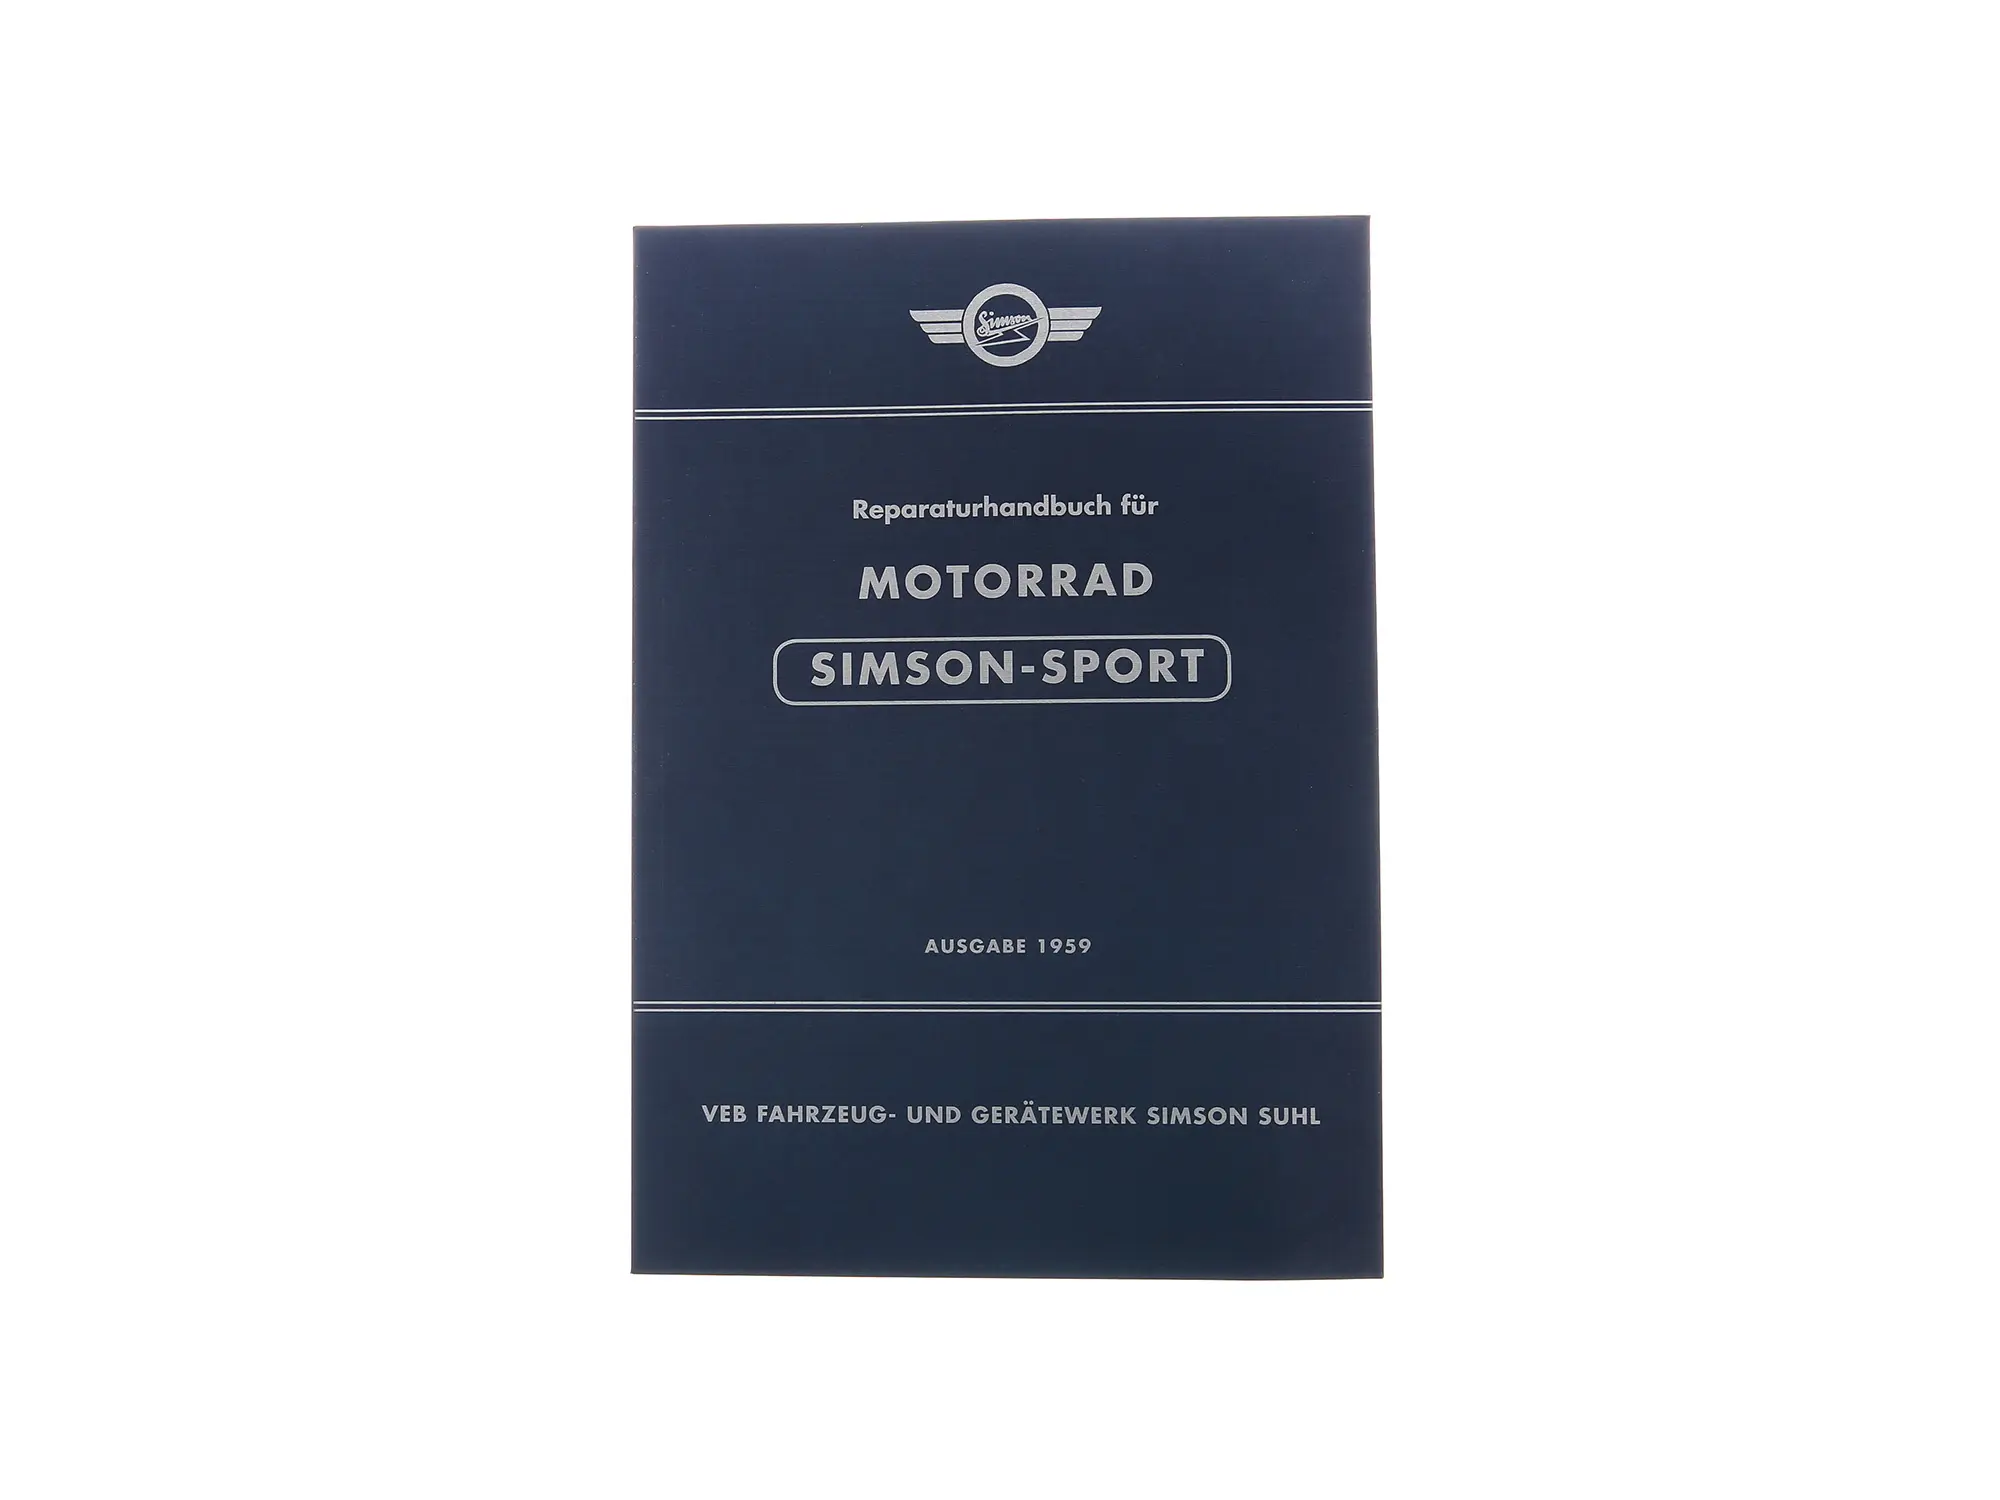 Reparaturhandbuch Motorrad "SIMSON-SPORT" Ausgabe 1959 - pass. für AWO425S -mit 89 Bildern, Art.-Nr.: 10063555 - Bild 1